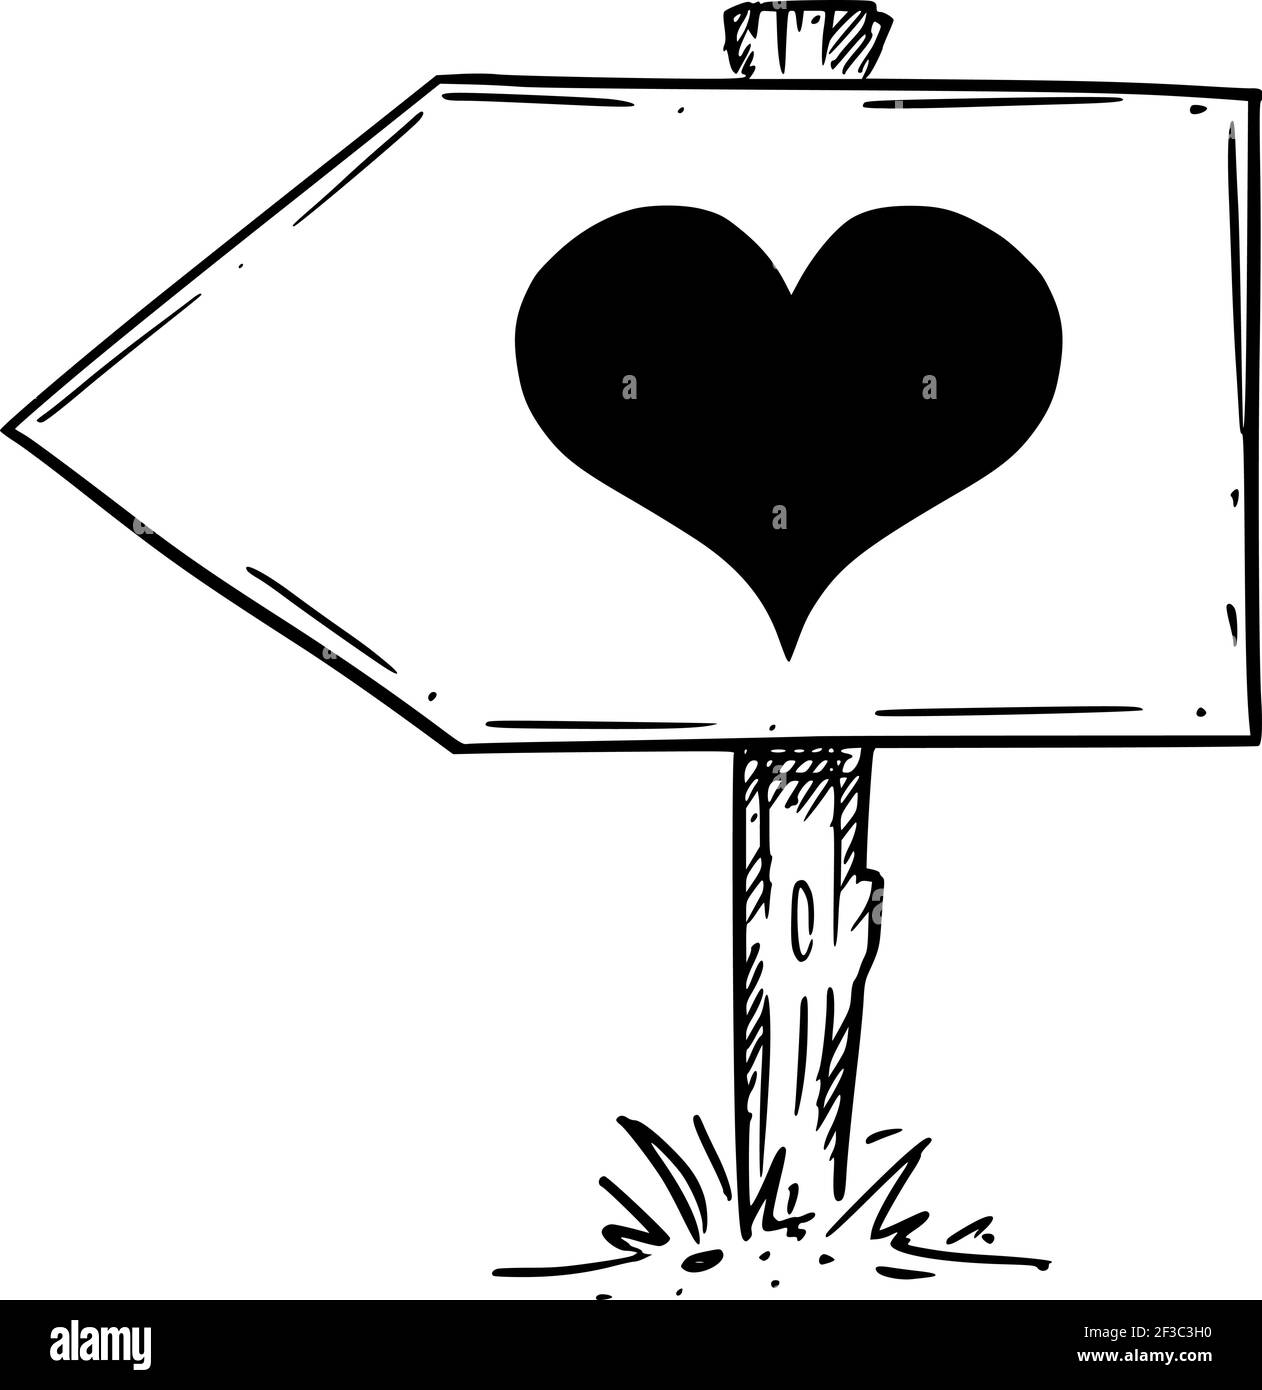 Folge Deinem Herzen, Liebe, Emotion, Gefühl. Verkehrsschild. Handzeichnung und Illustration Stock Vektor